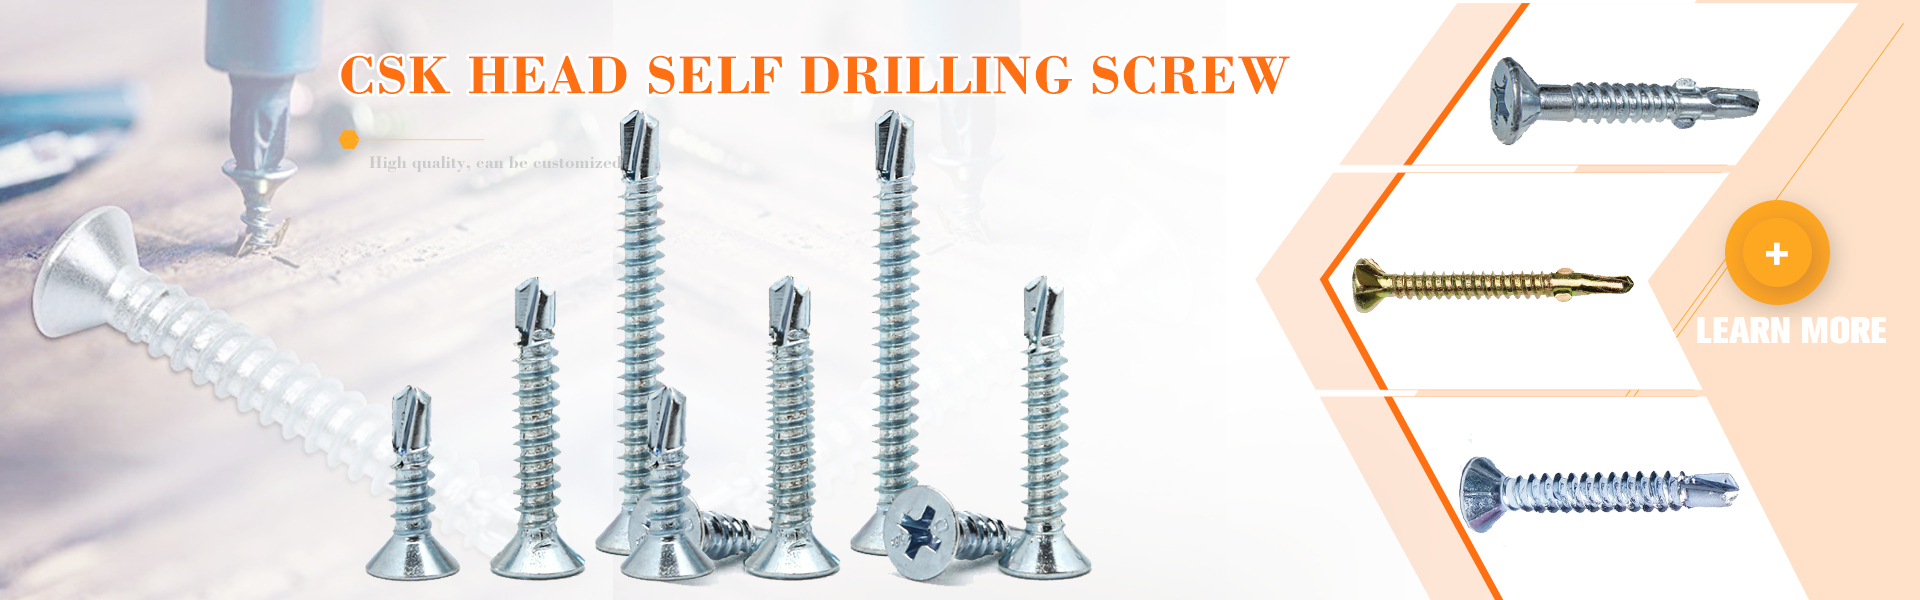 Self-drilling screws for metal